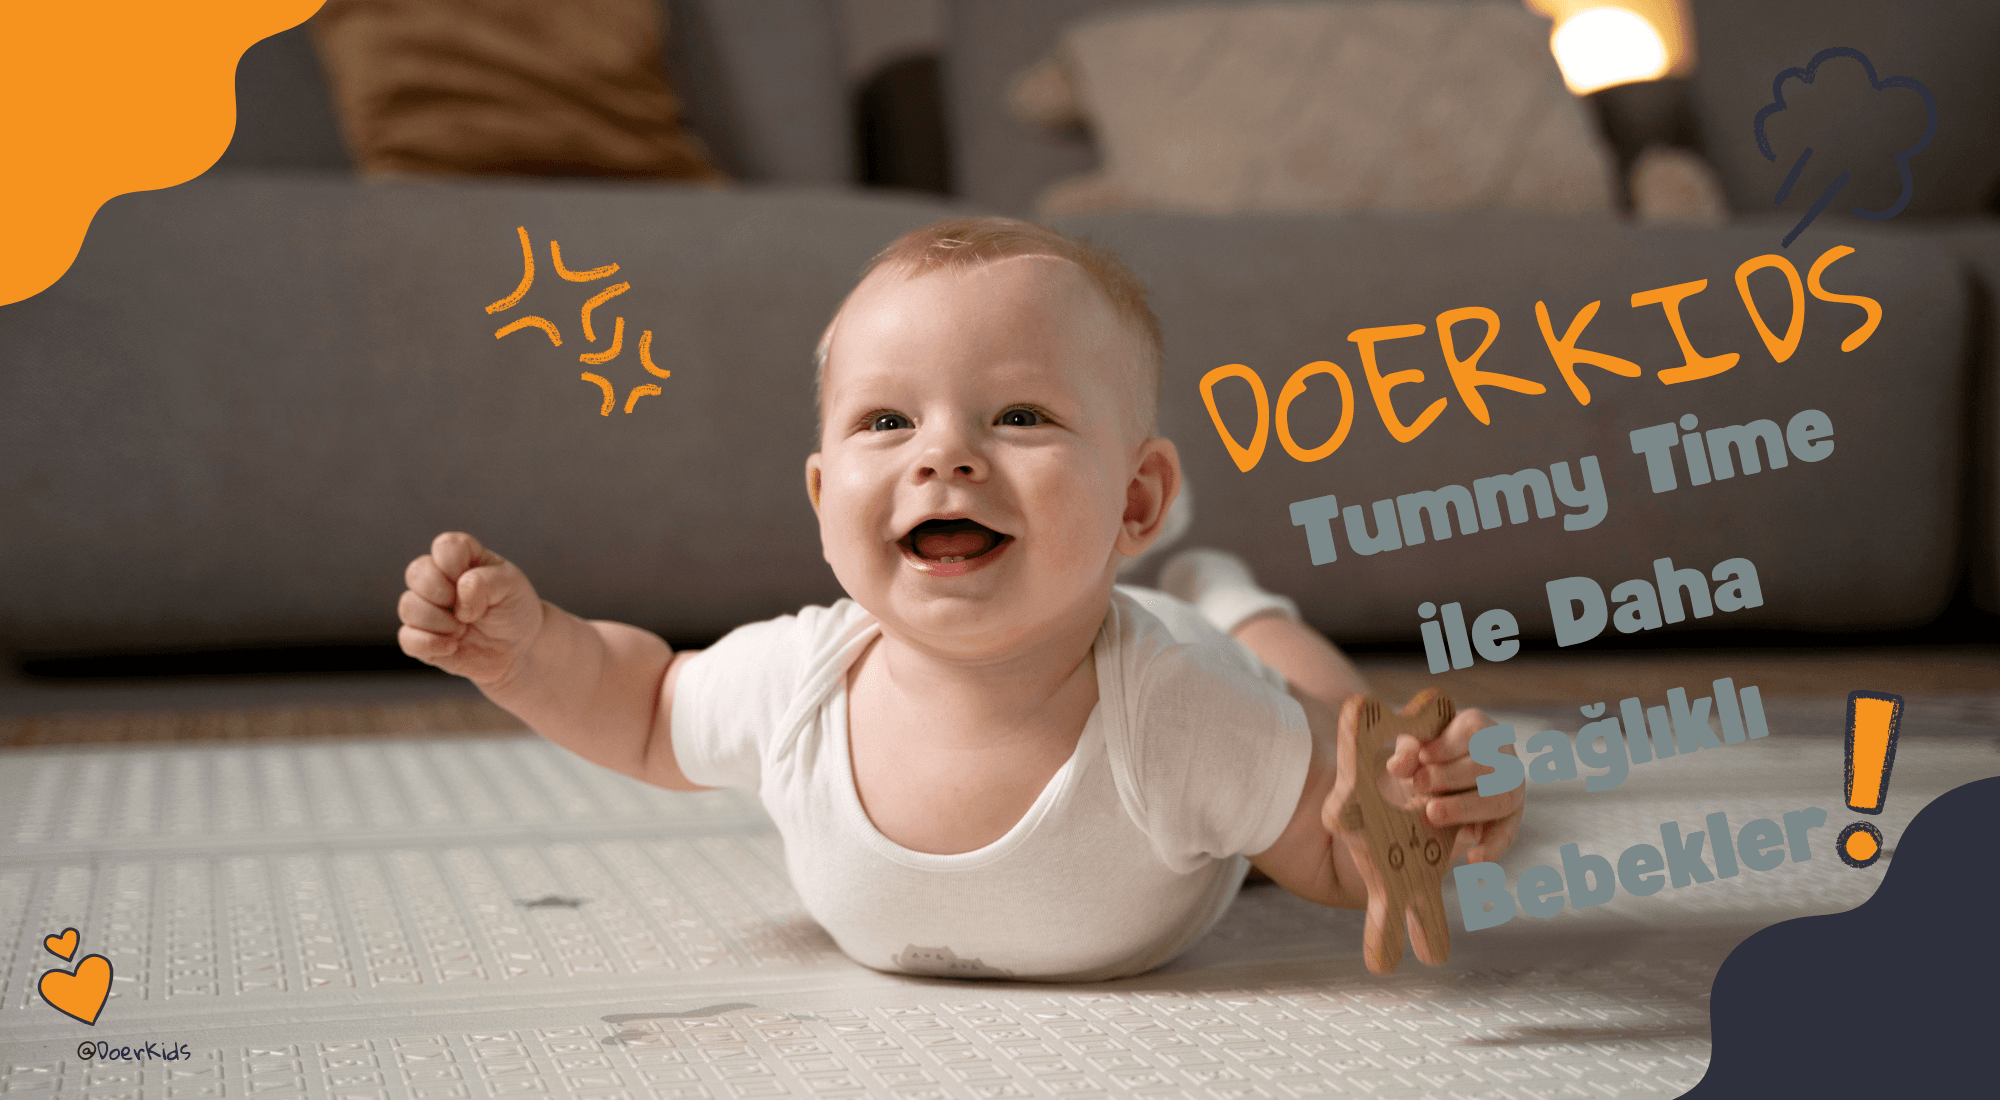 DoerKids Tummy Time ile Daha Sağlıklı Bebekler